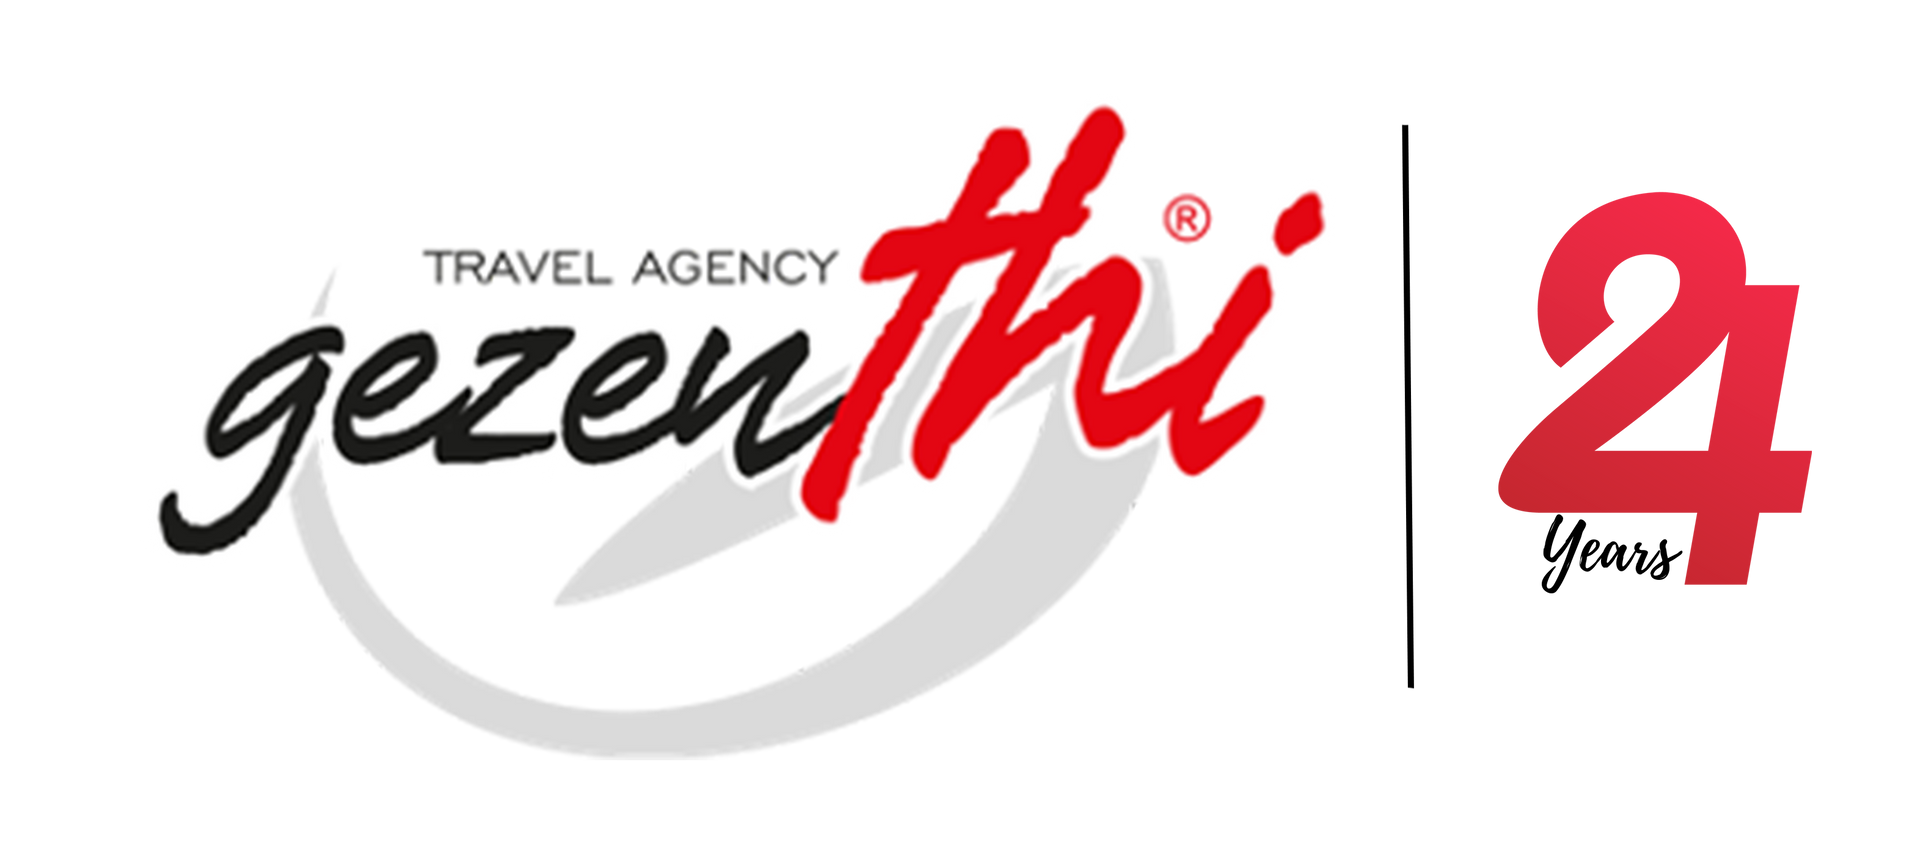 gezenhi 24 years logo